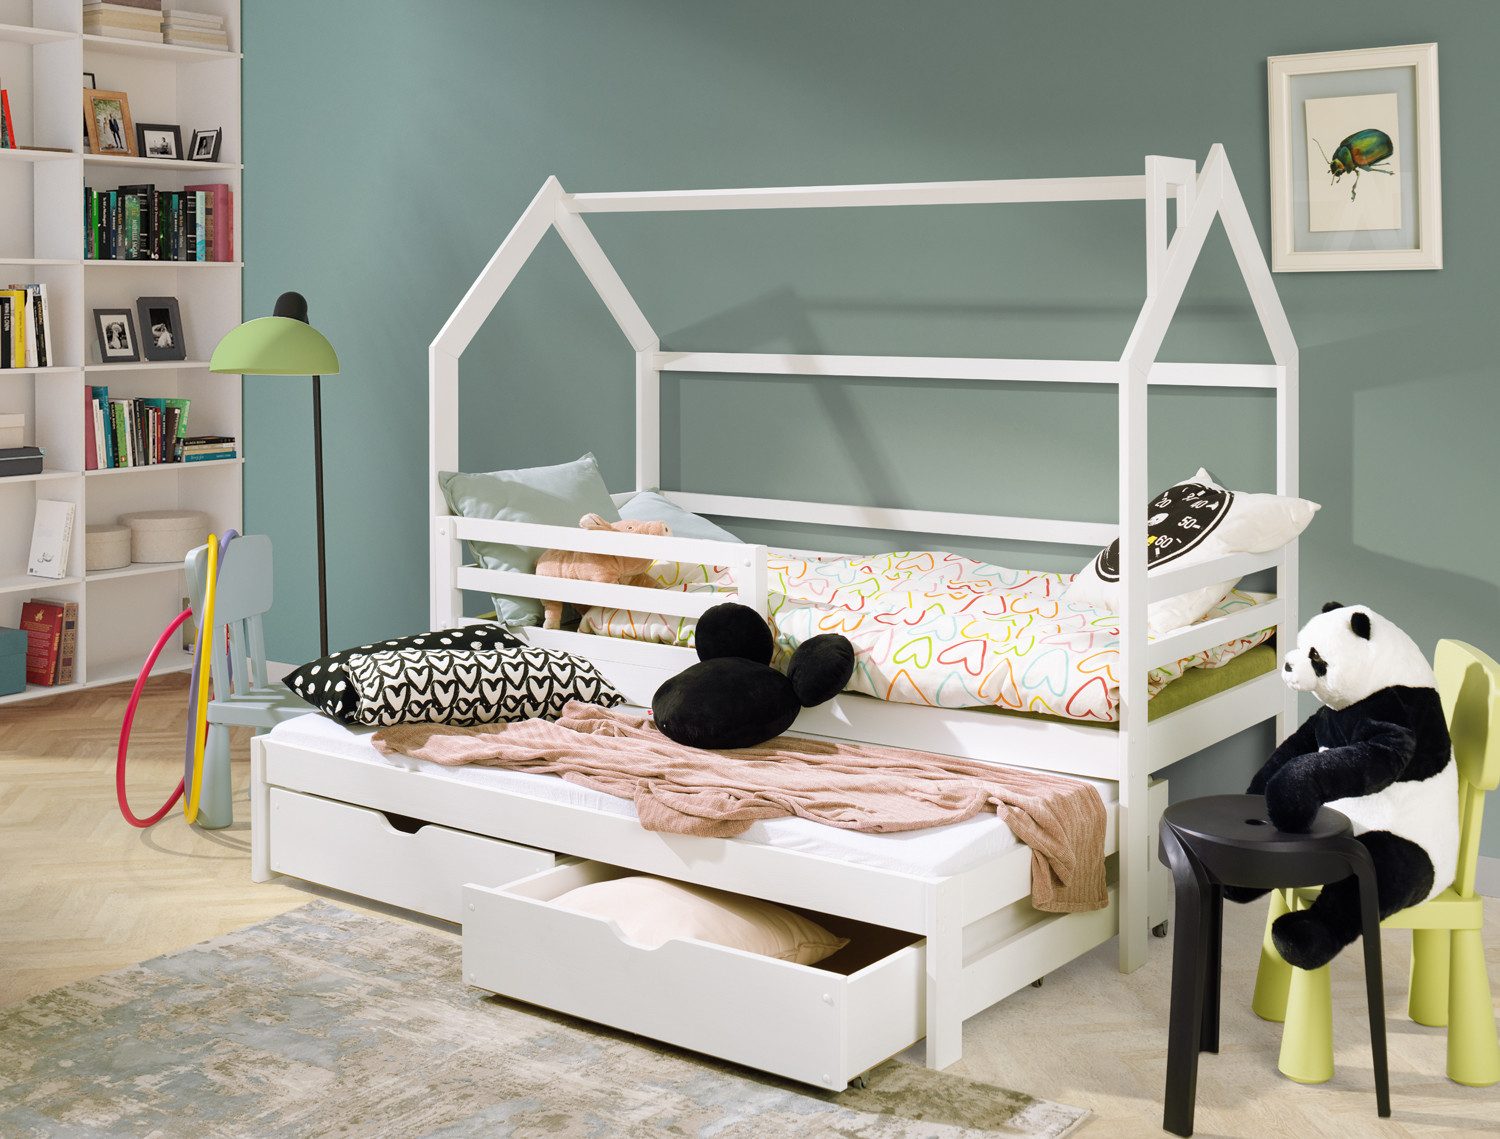 thematys Hausbett mit Ausziehbett und zwei Schubladen in weiß (80x160cm, mit Rausfallschutz für Jungen und Mädchen, Kinderzimmer-Bett), aus massiv Kieferholz